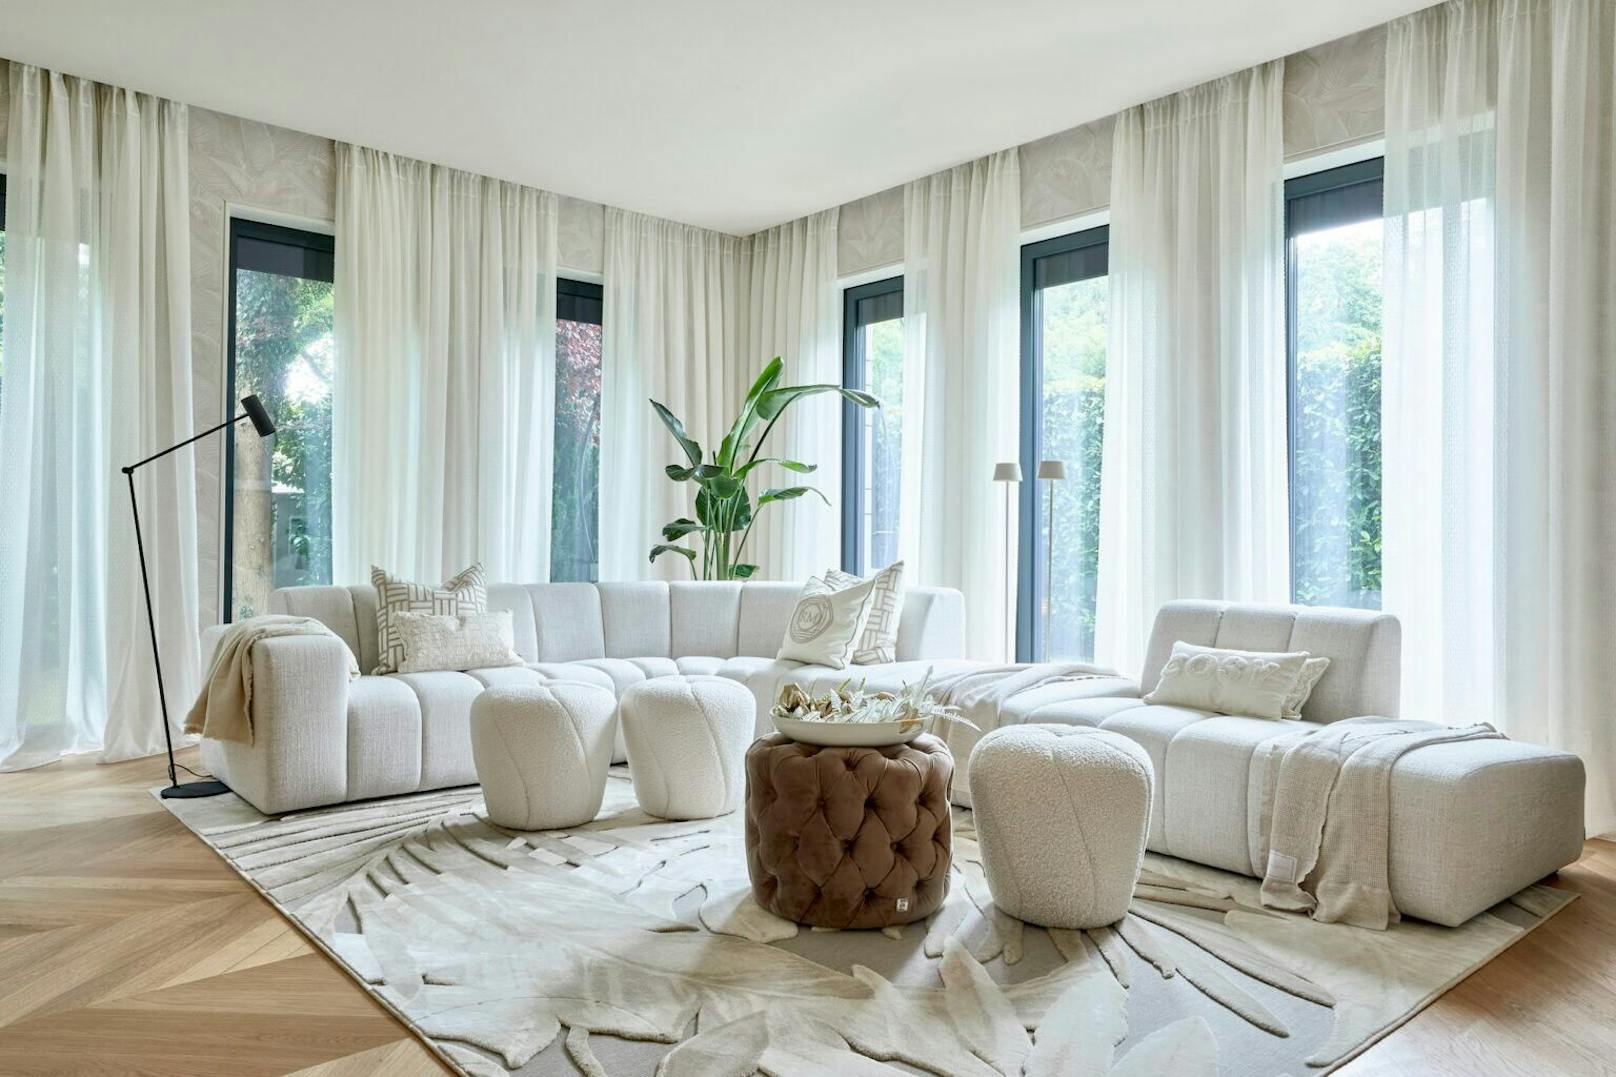 Herzstück des Wohnzimmers von Cathy Hummels ist das runde Sofa. Hilfe beim Einrichten bekam die 35-Jährige von Rivièra Maison.